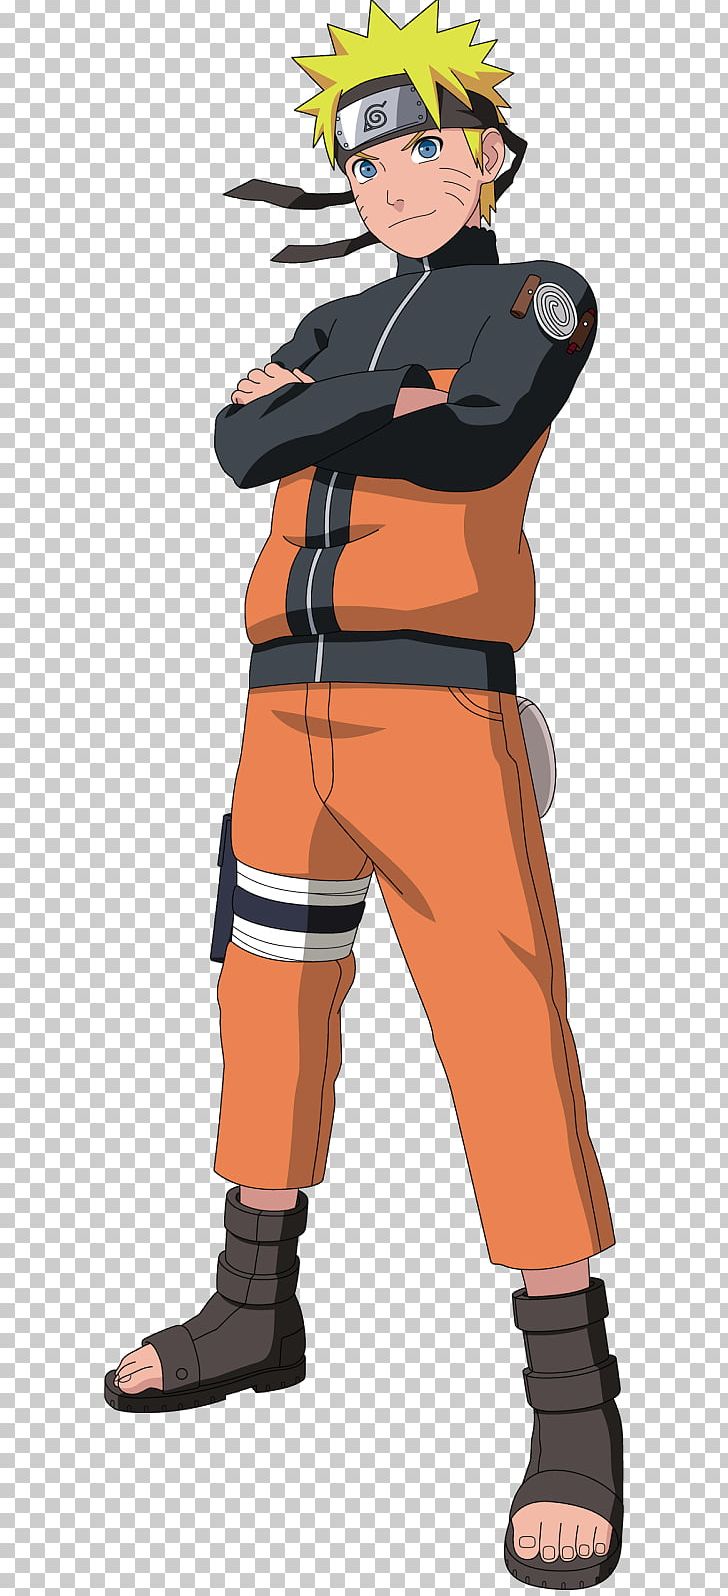 Naruto Uzumaki Sasuke Uchiha Sakura Haruno Madara Uchiha Itachi Uchiha PNG, Clipart, Cartoon, Costume, Everything, Fictional Character, Headgear Free PNG Download